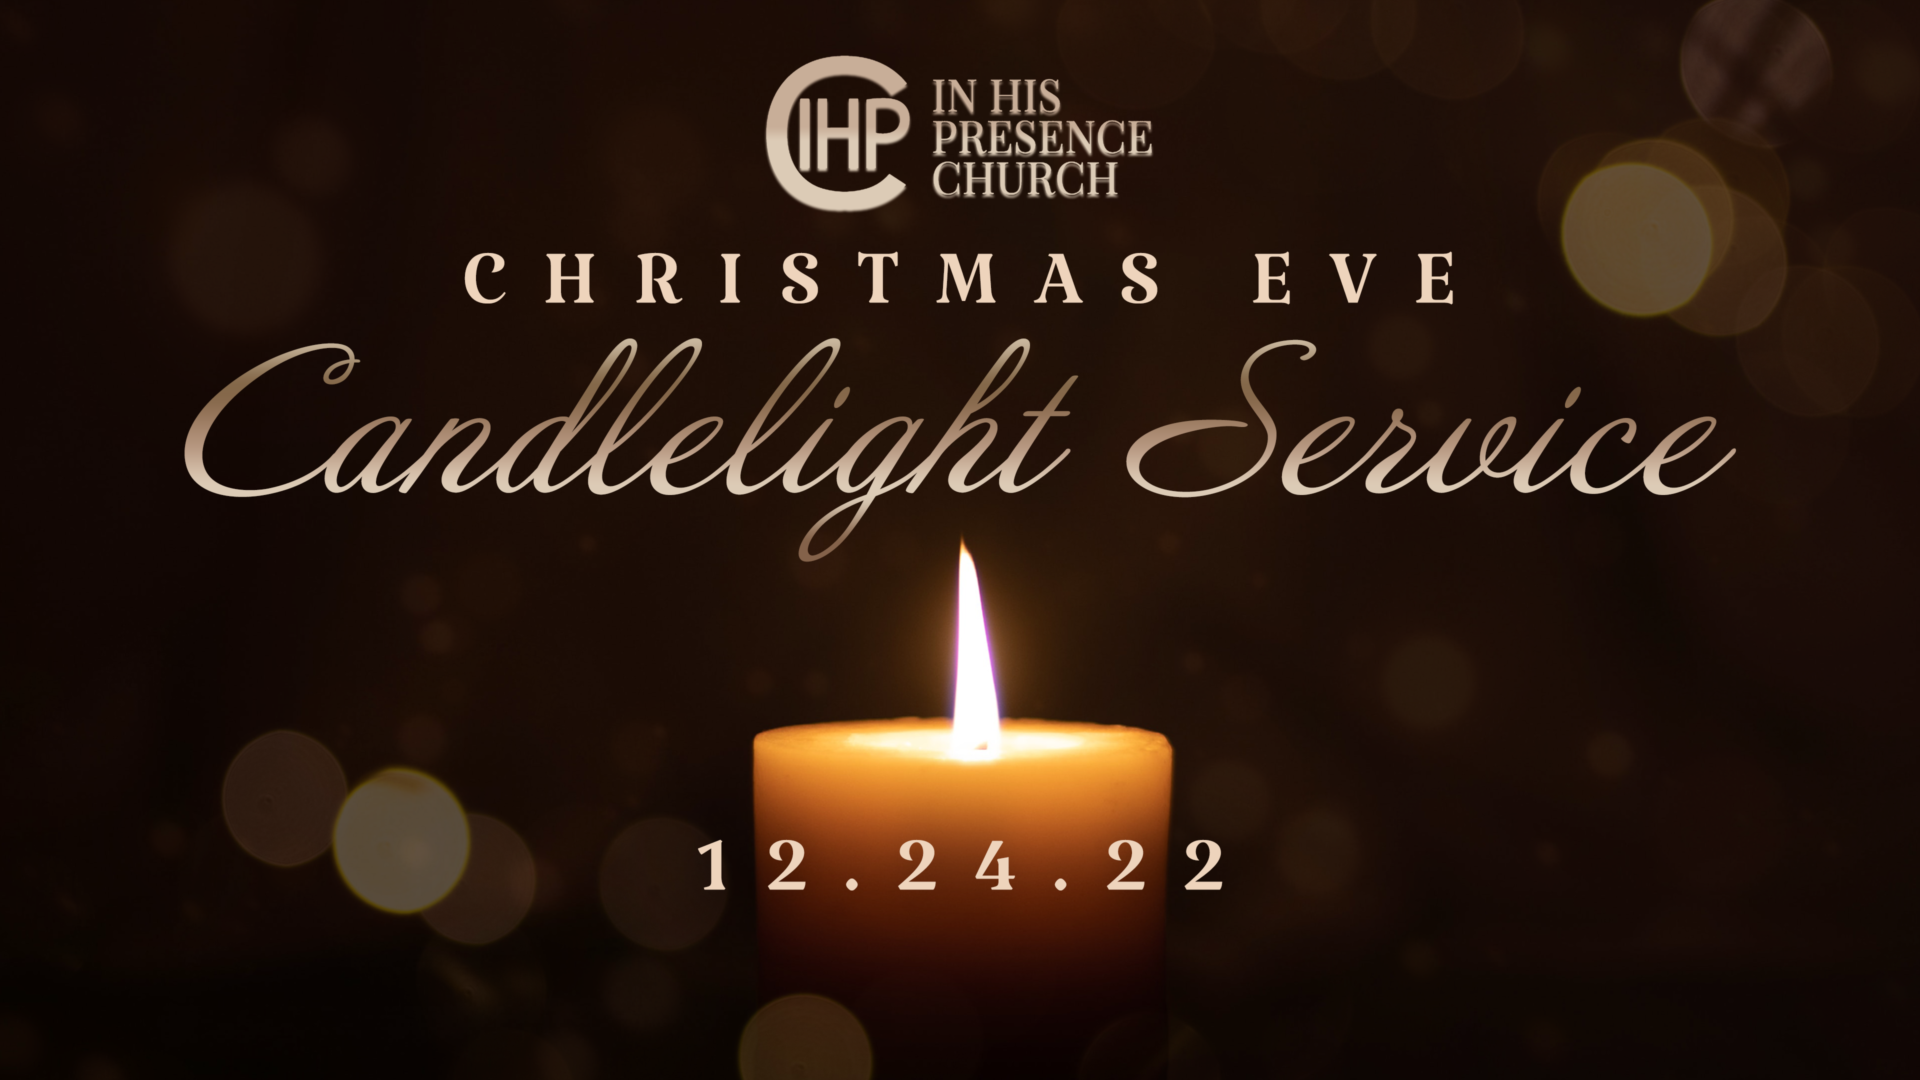 IHPC - CHRISTMAS EVE CANDLE LIGHT SERVICE